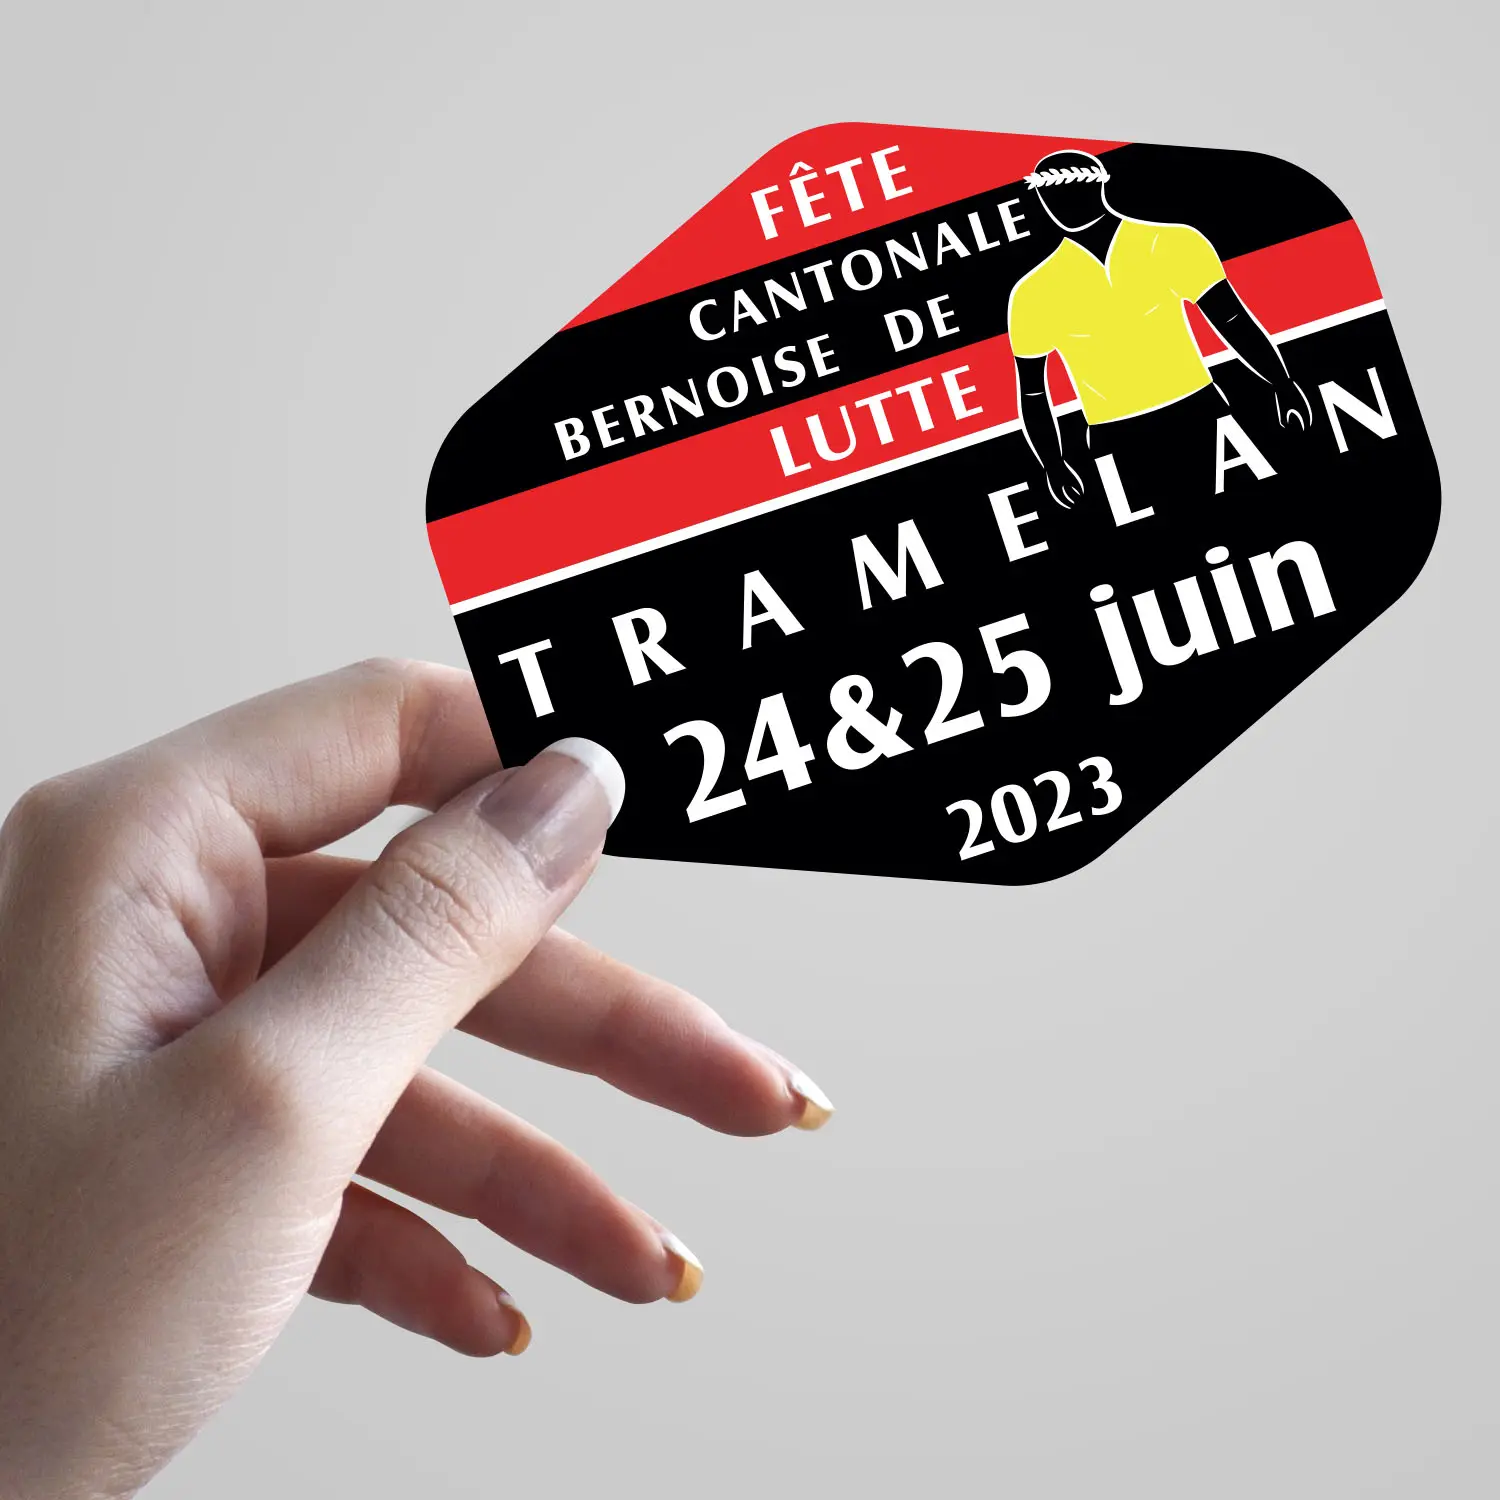 Sticker fête cantonale bernoise de lutte Tramelan 2023